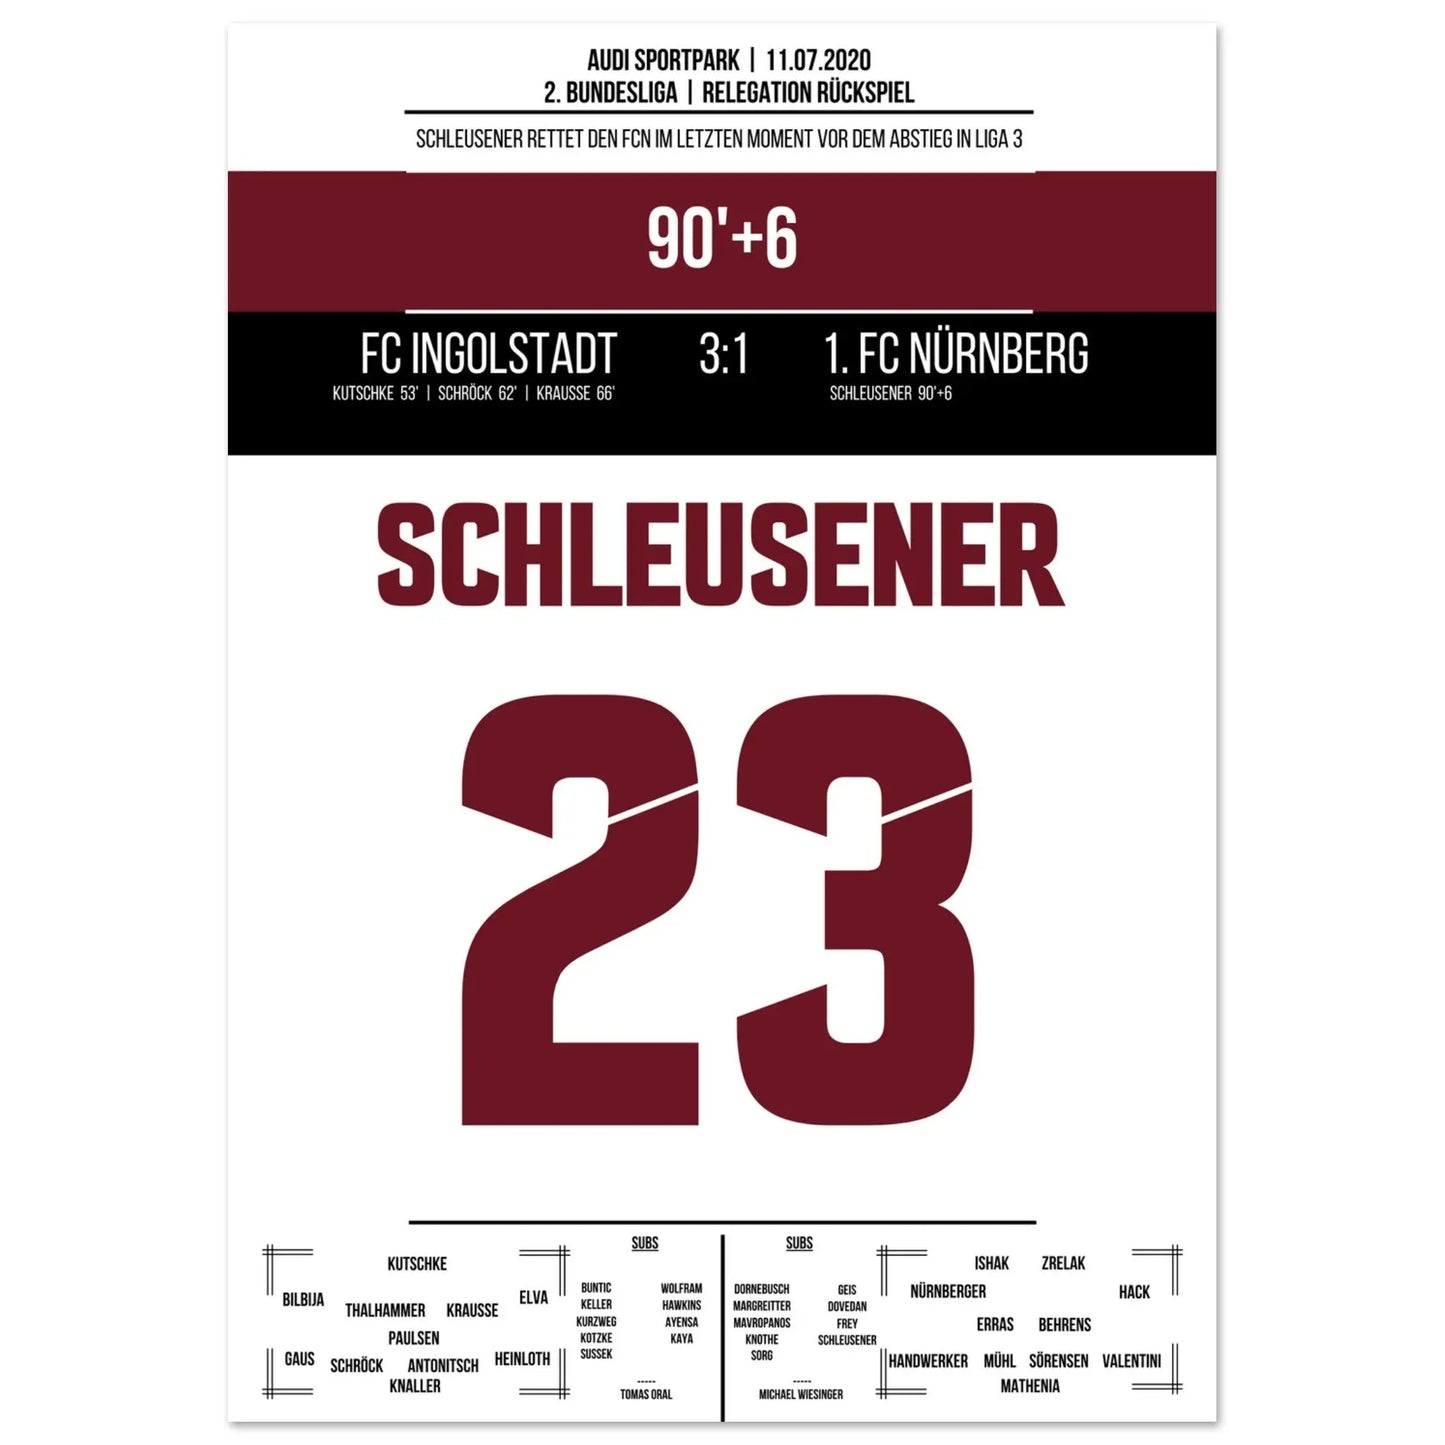 Le sauvetage de dernière minute de Schleusener en 2020